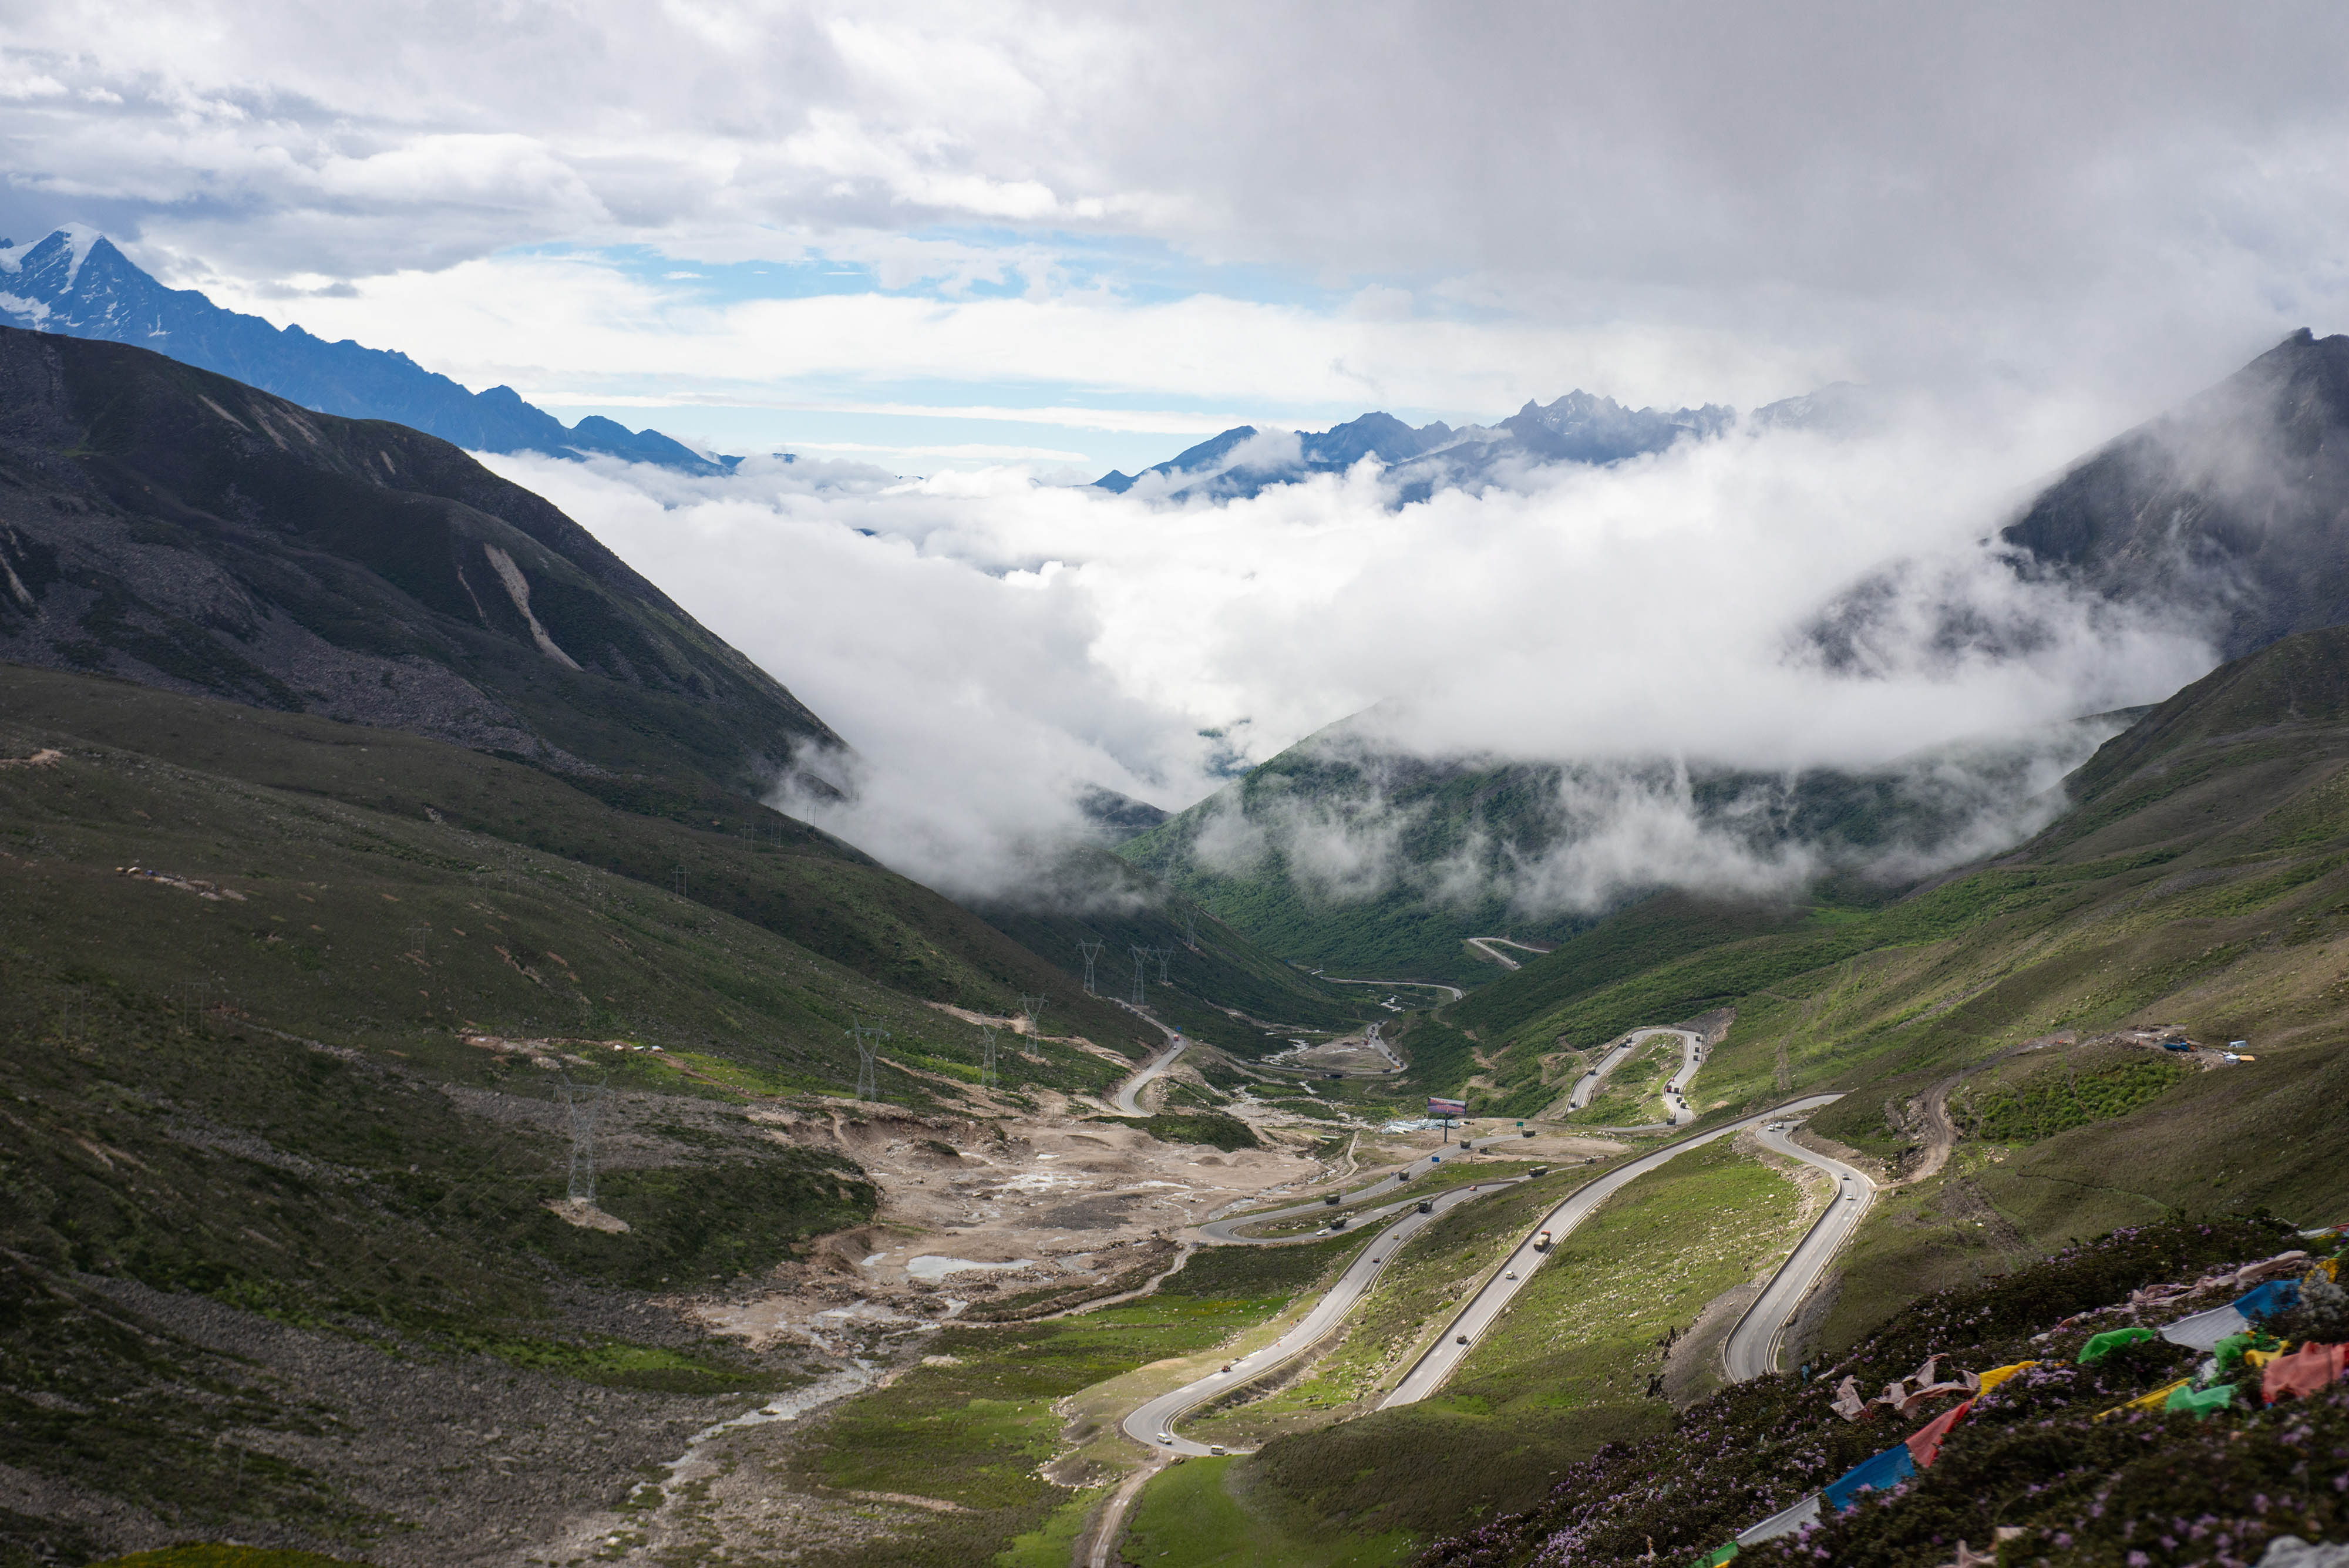 2019年6月30日垭口:川藏公路上的观景台这是在川藏公路四川折多山垭口